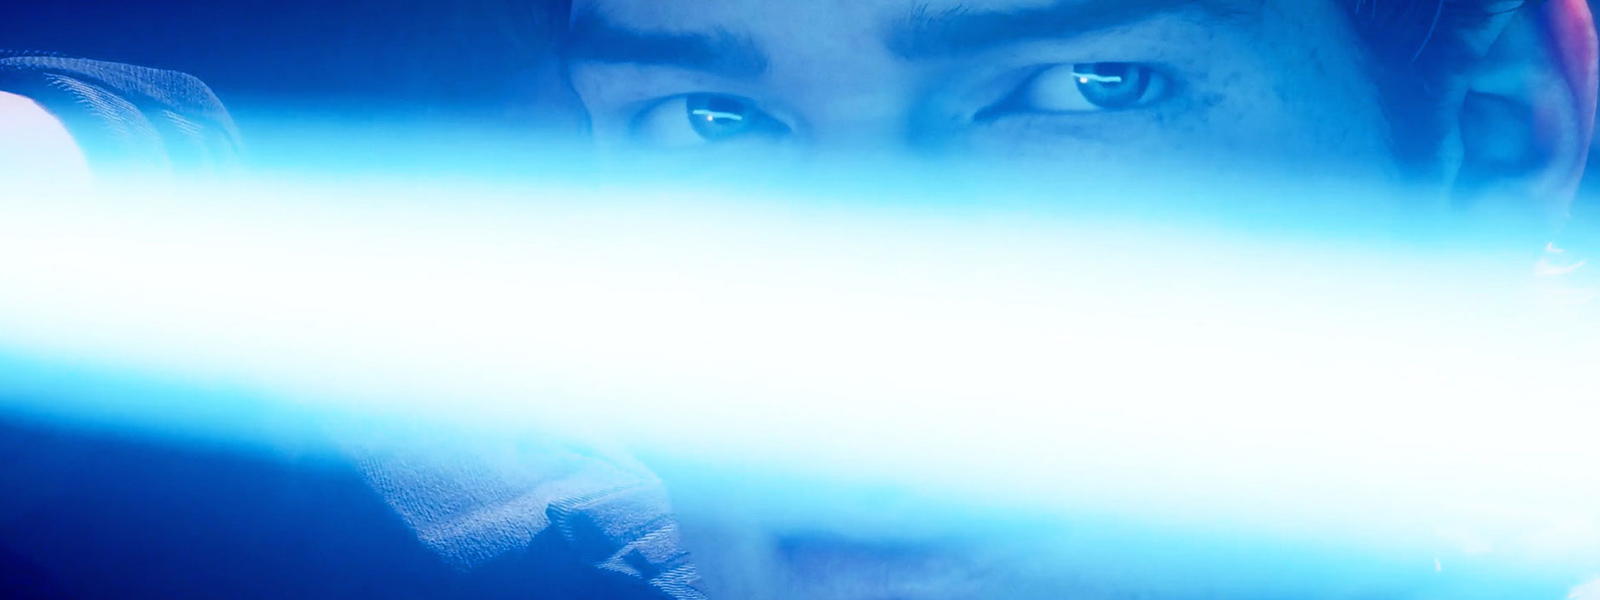 En närbild på Cal Kestis som håller ett lasersvärd framför sitt ansikte